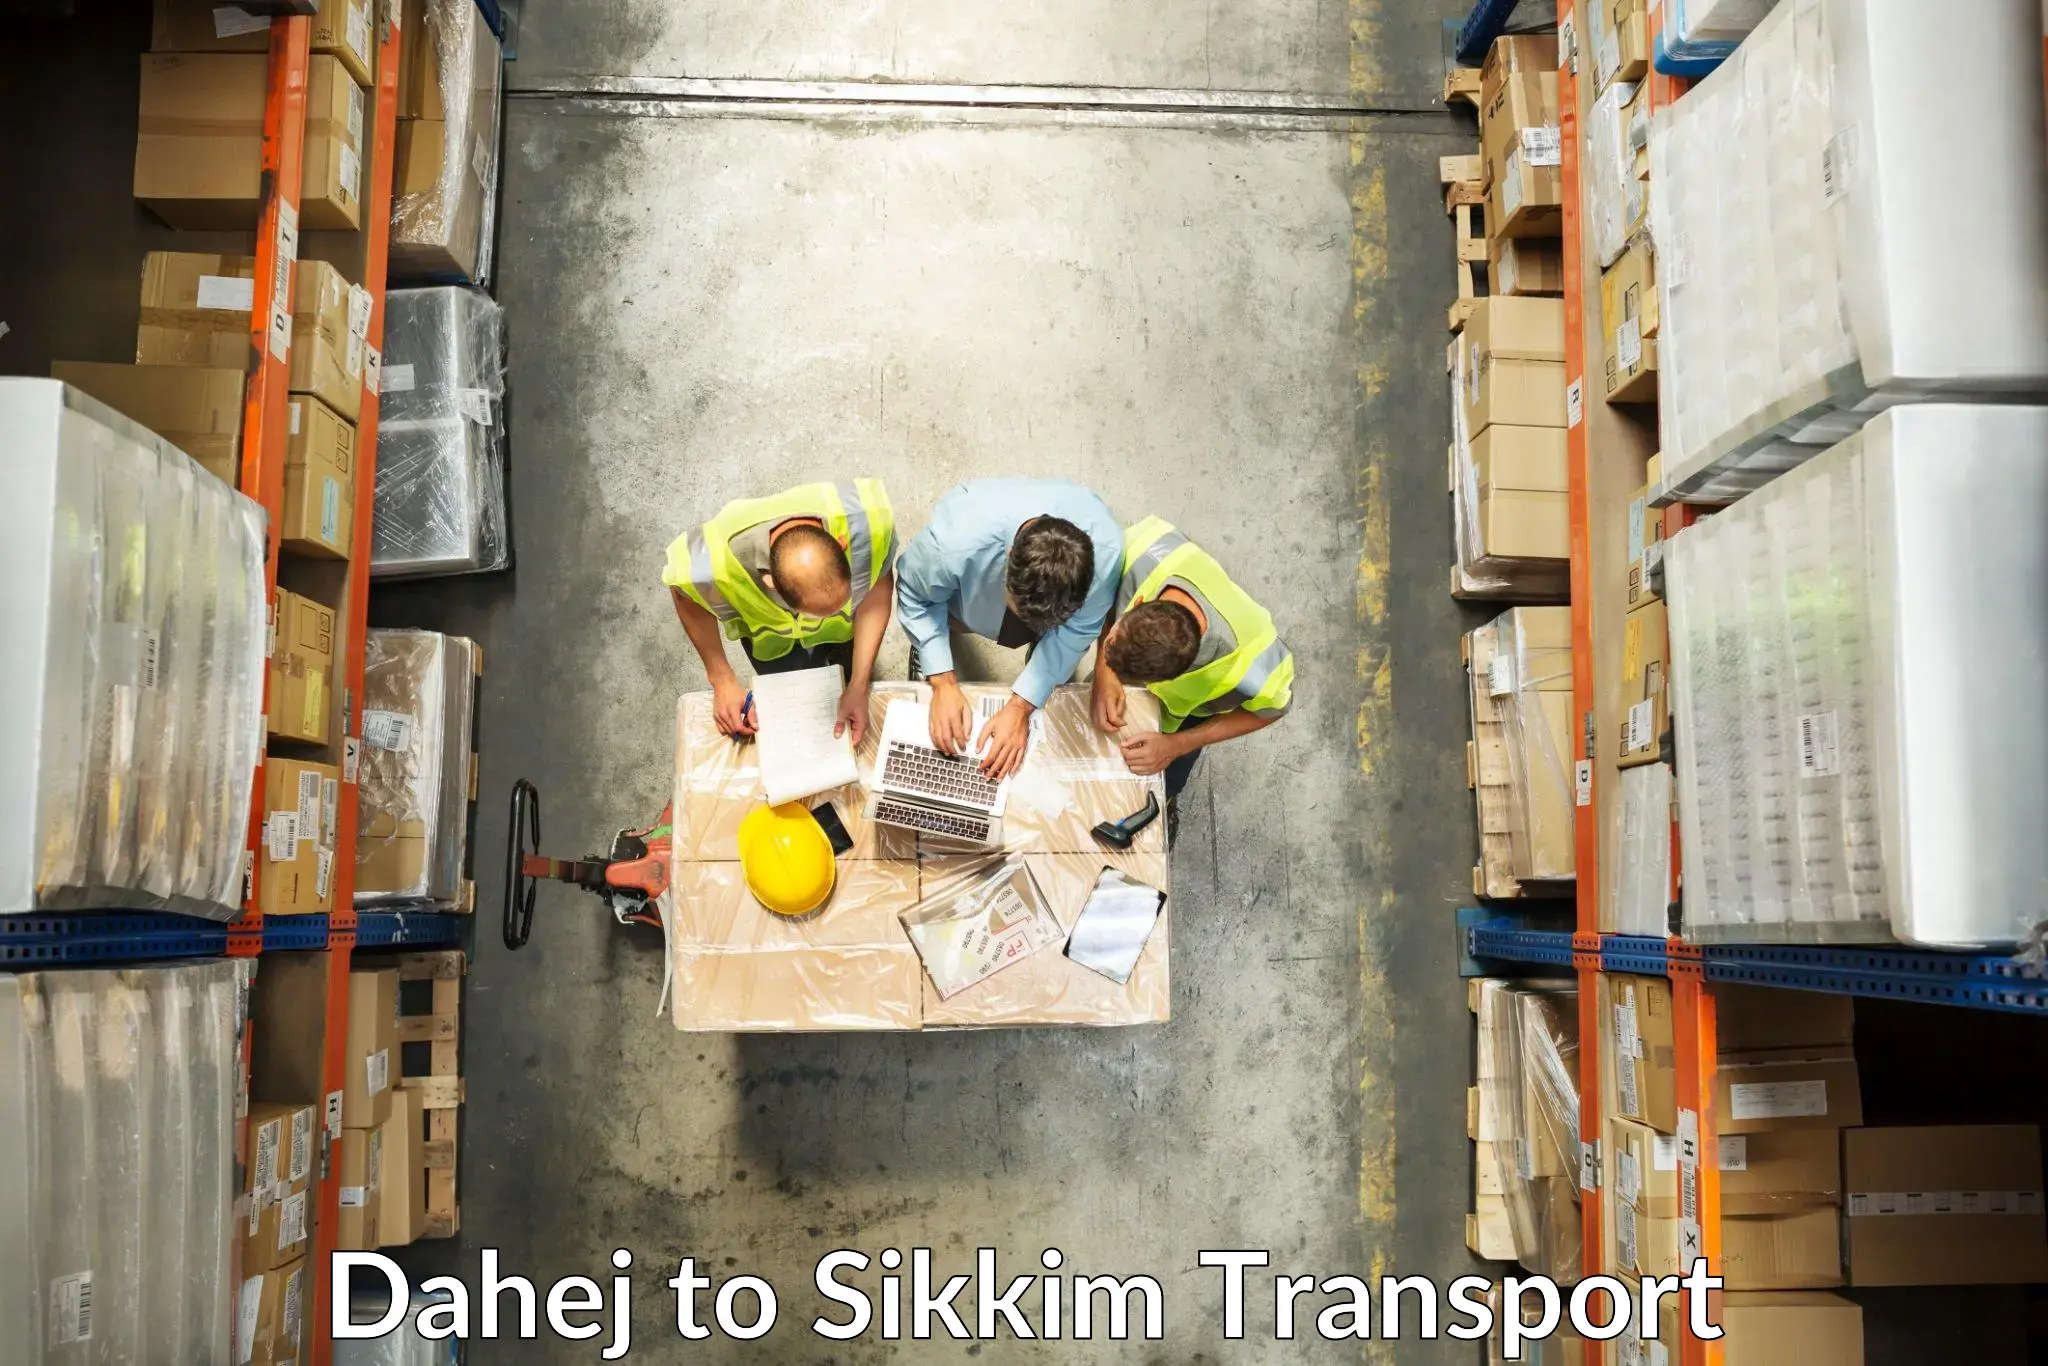 Daily transport service Dahej to Sikkim